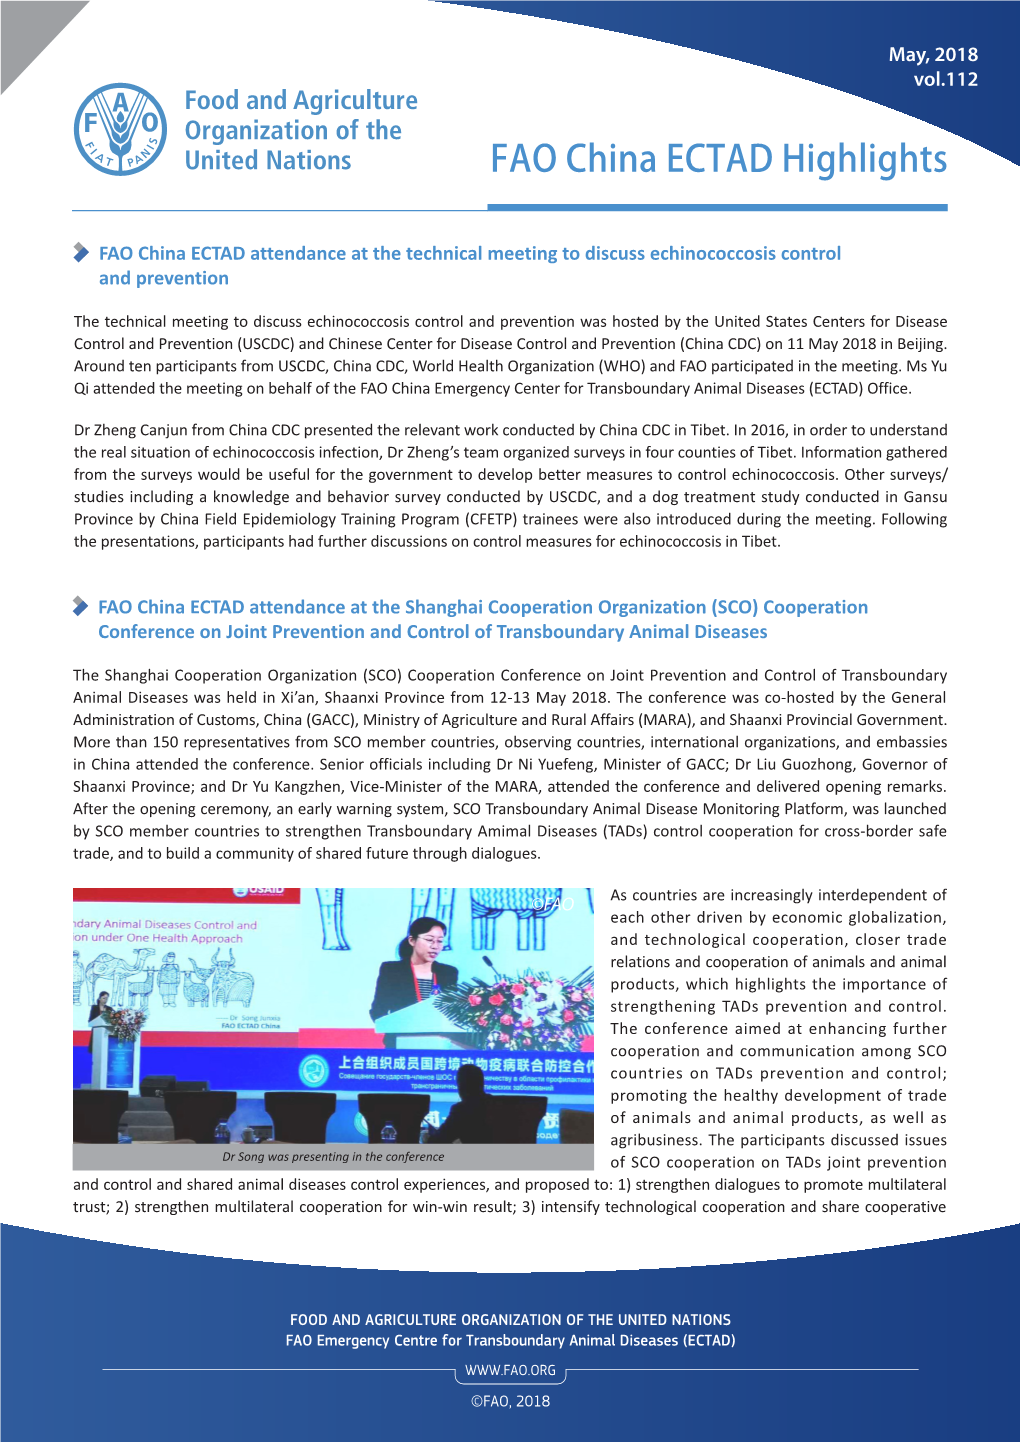 FAO ECTAD China Highlights May 2018